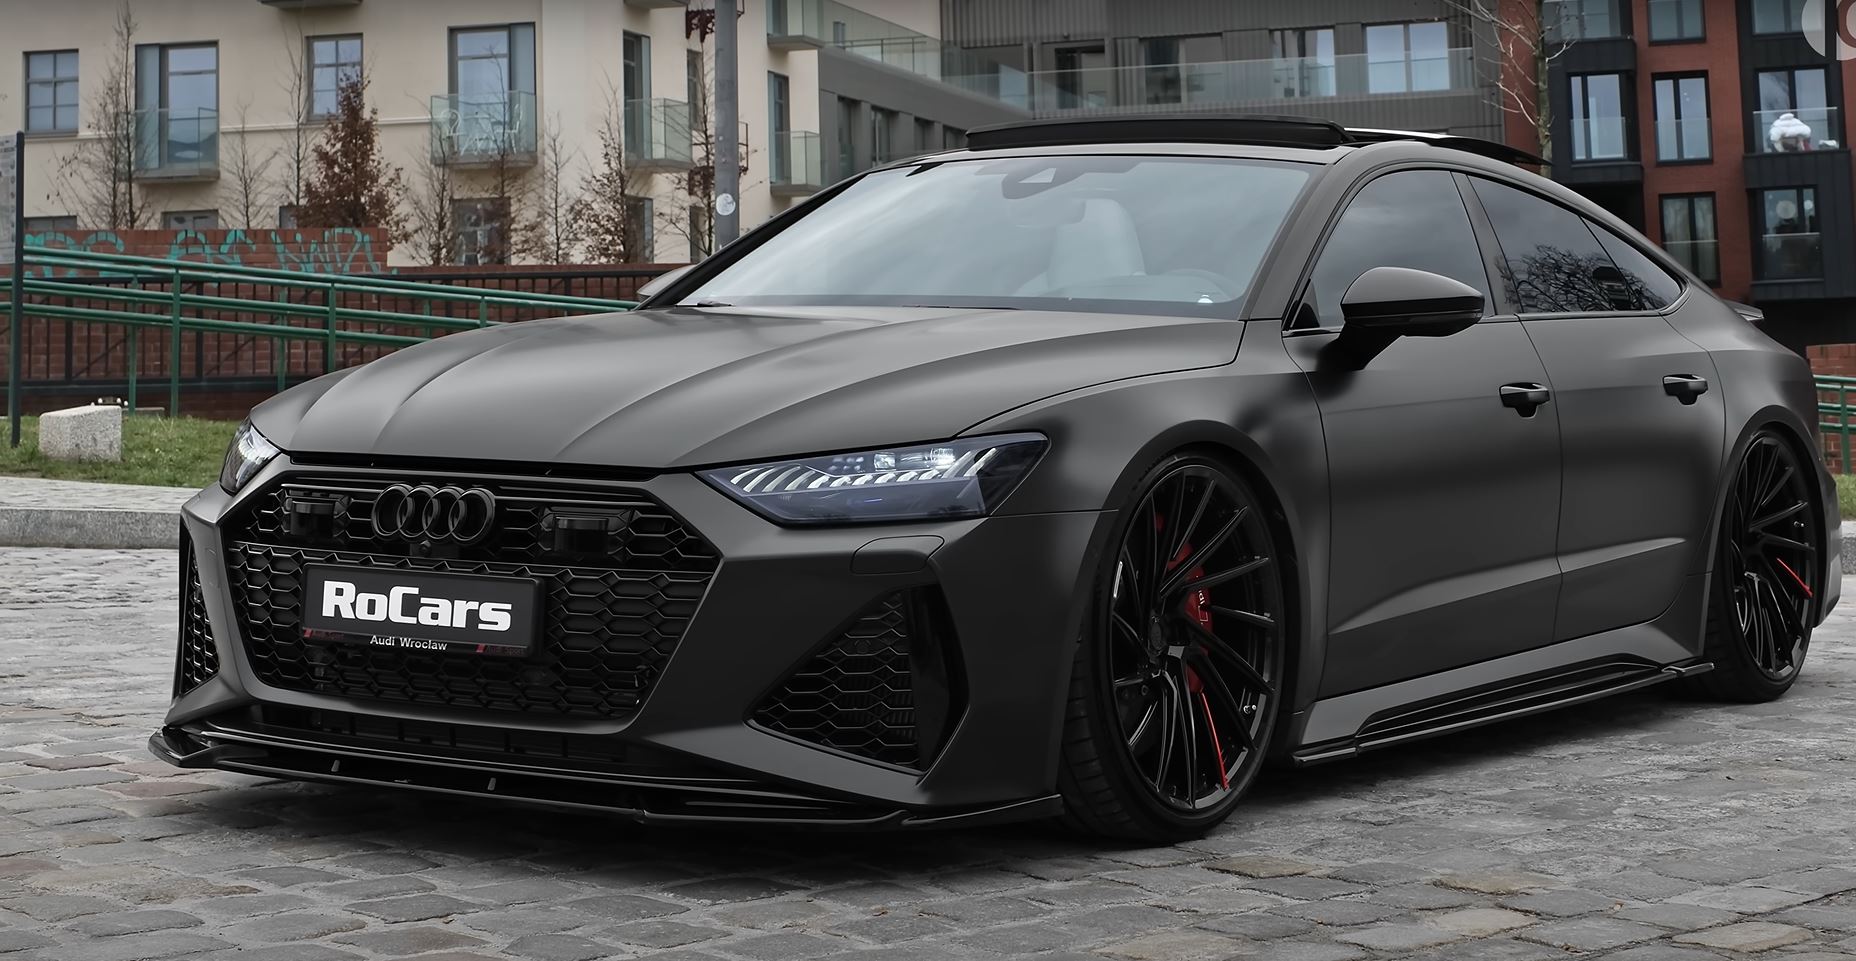 Audi - Rs7